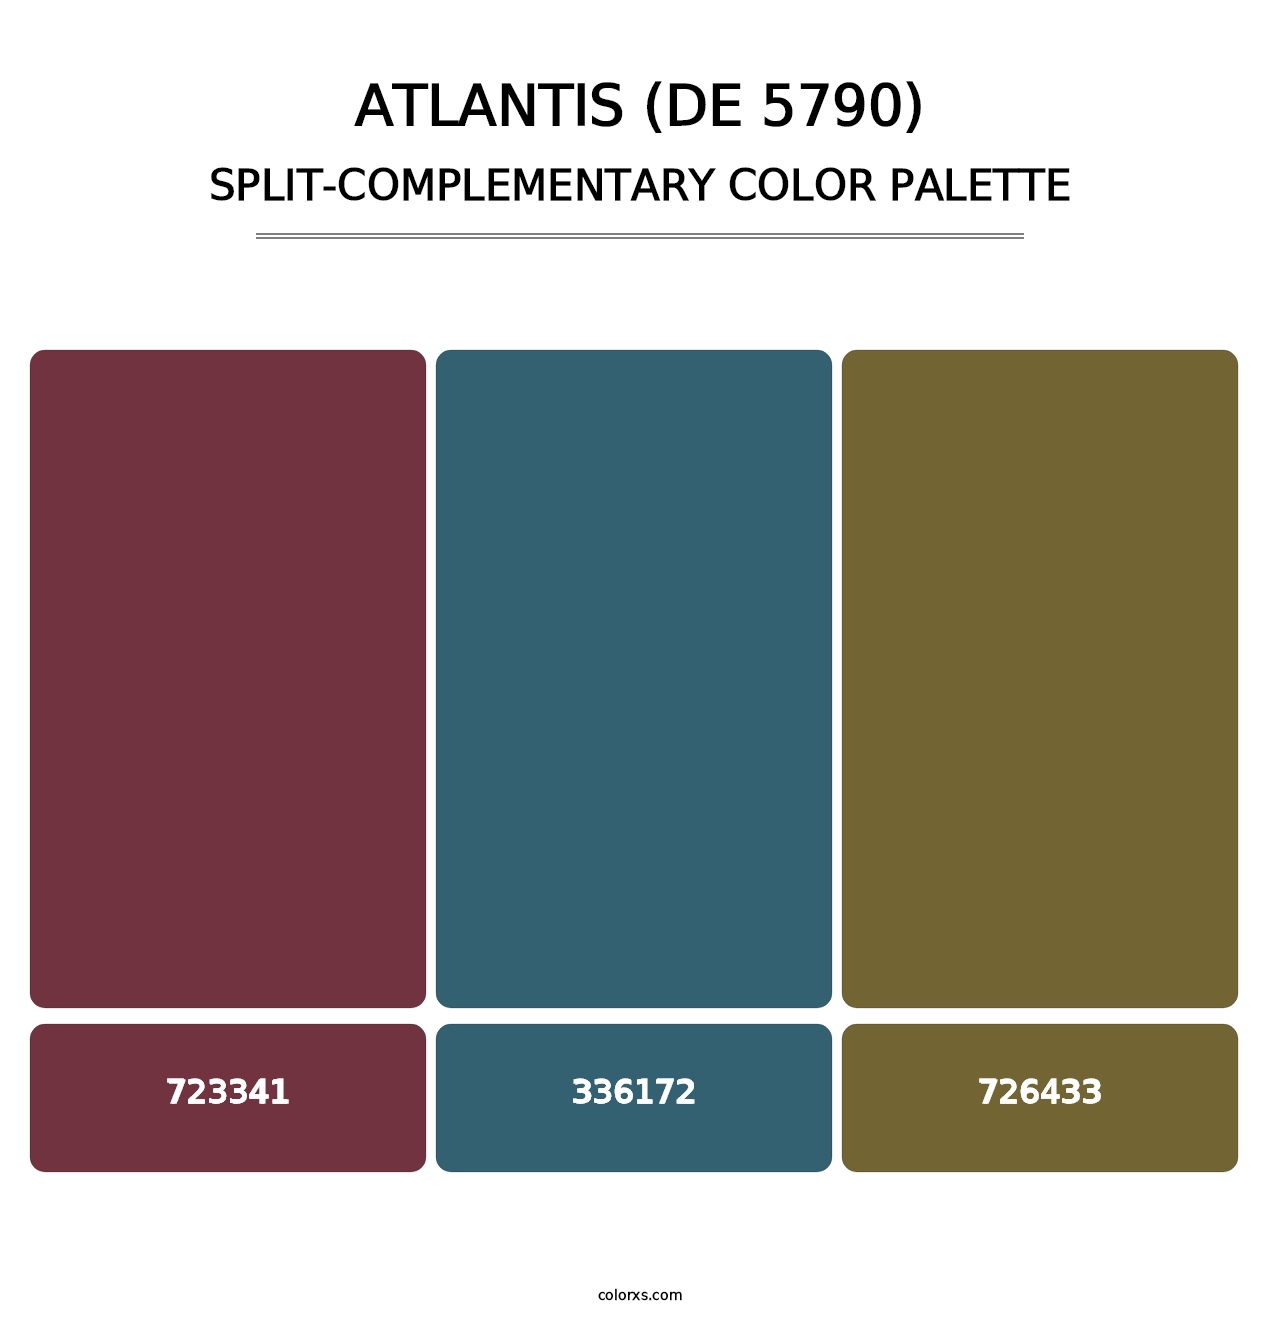 Atlantis (DE 5790) - Split-Complementary Color Palette